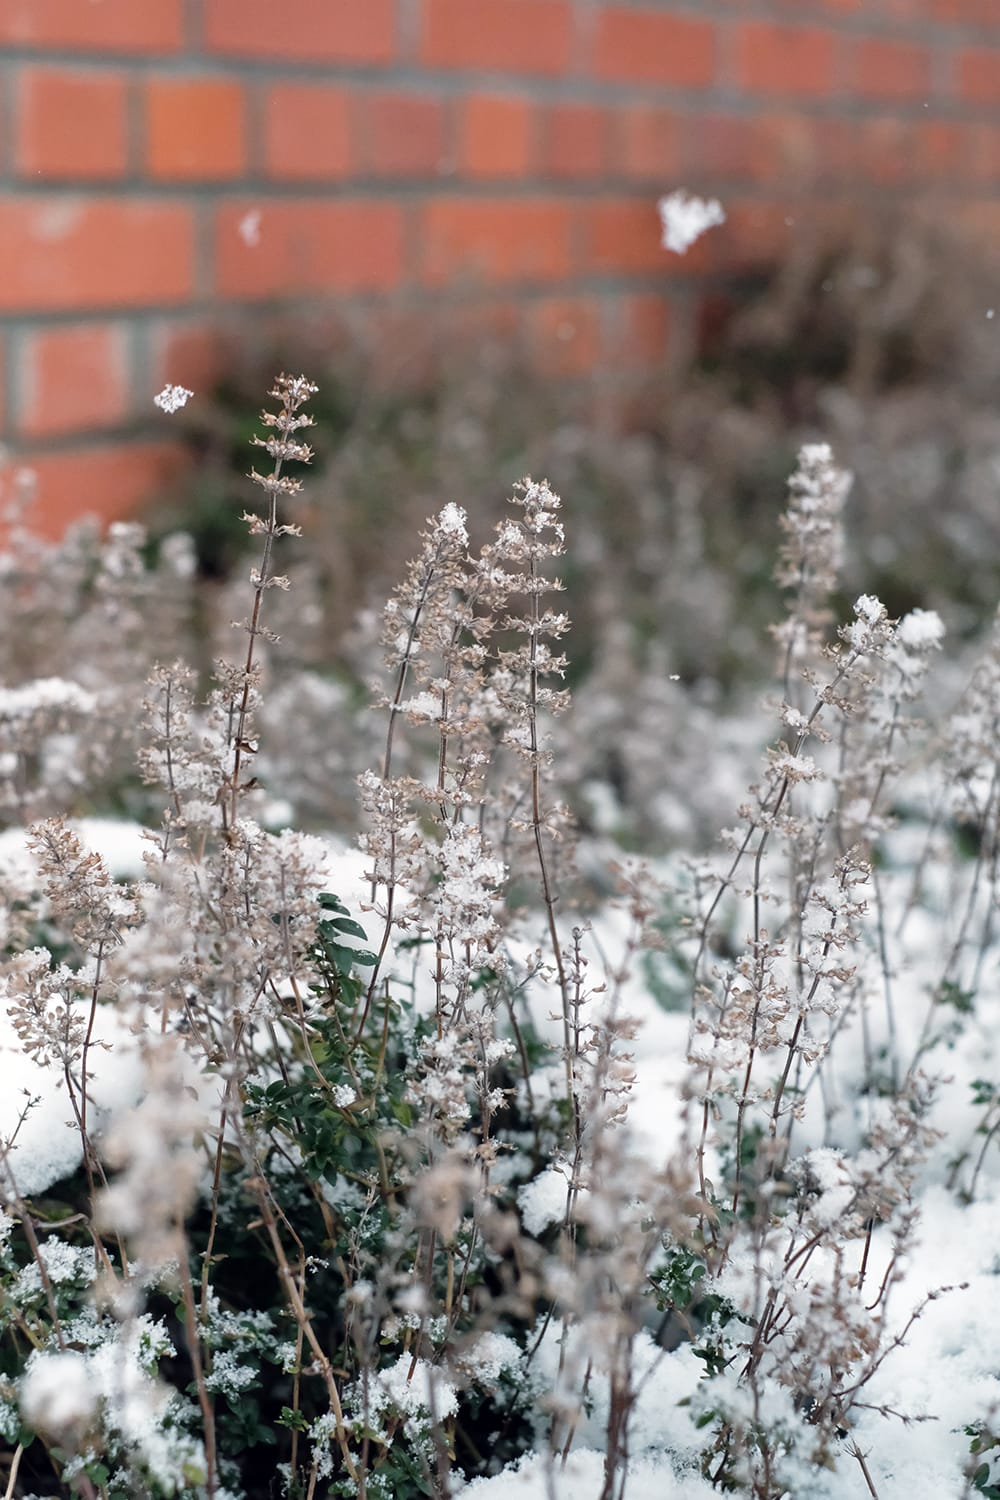 コモンタイムの枯れた花房に雪が降りかかる